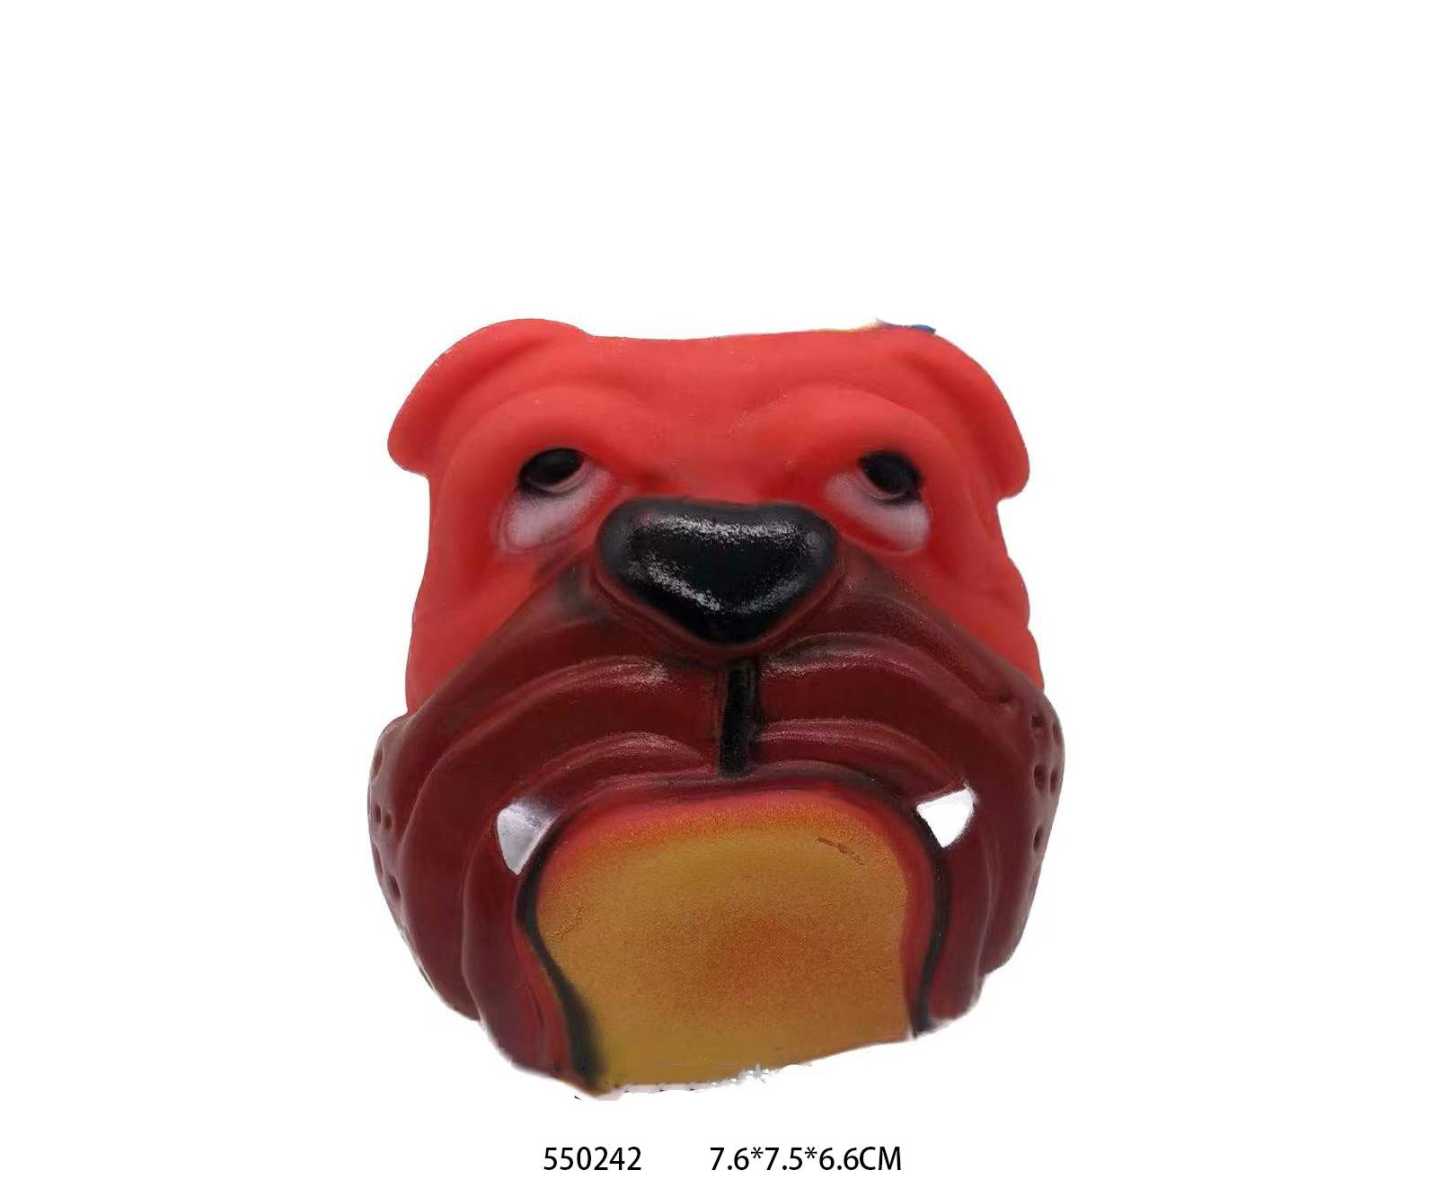 Latex dog toy - 7.6x6.6cm - 550242